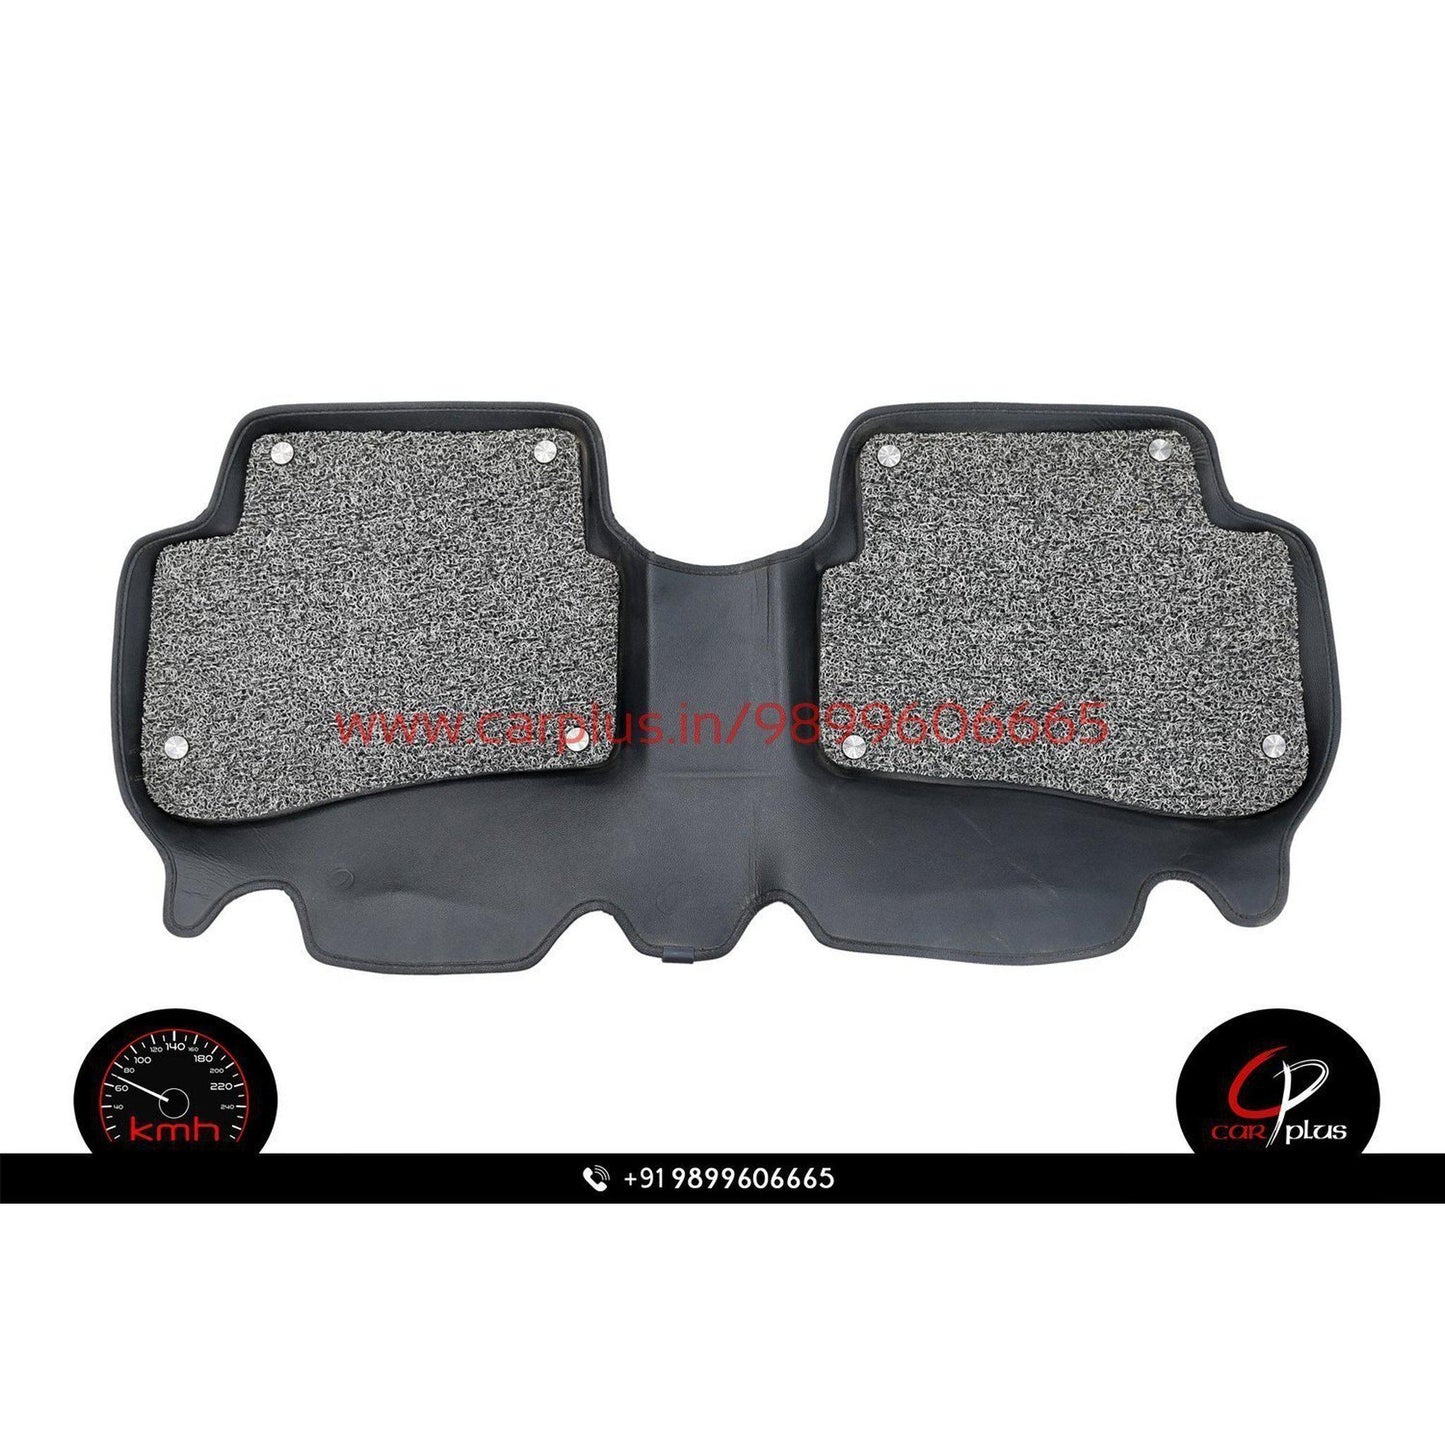 
                  
                    KMH 5D + COIL MATS with Velcro for Honda BRV (Black) KMH-5D + COIL MATS 5D + COIL MATS.
                  
                